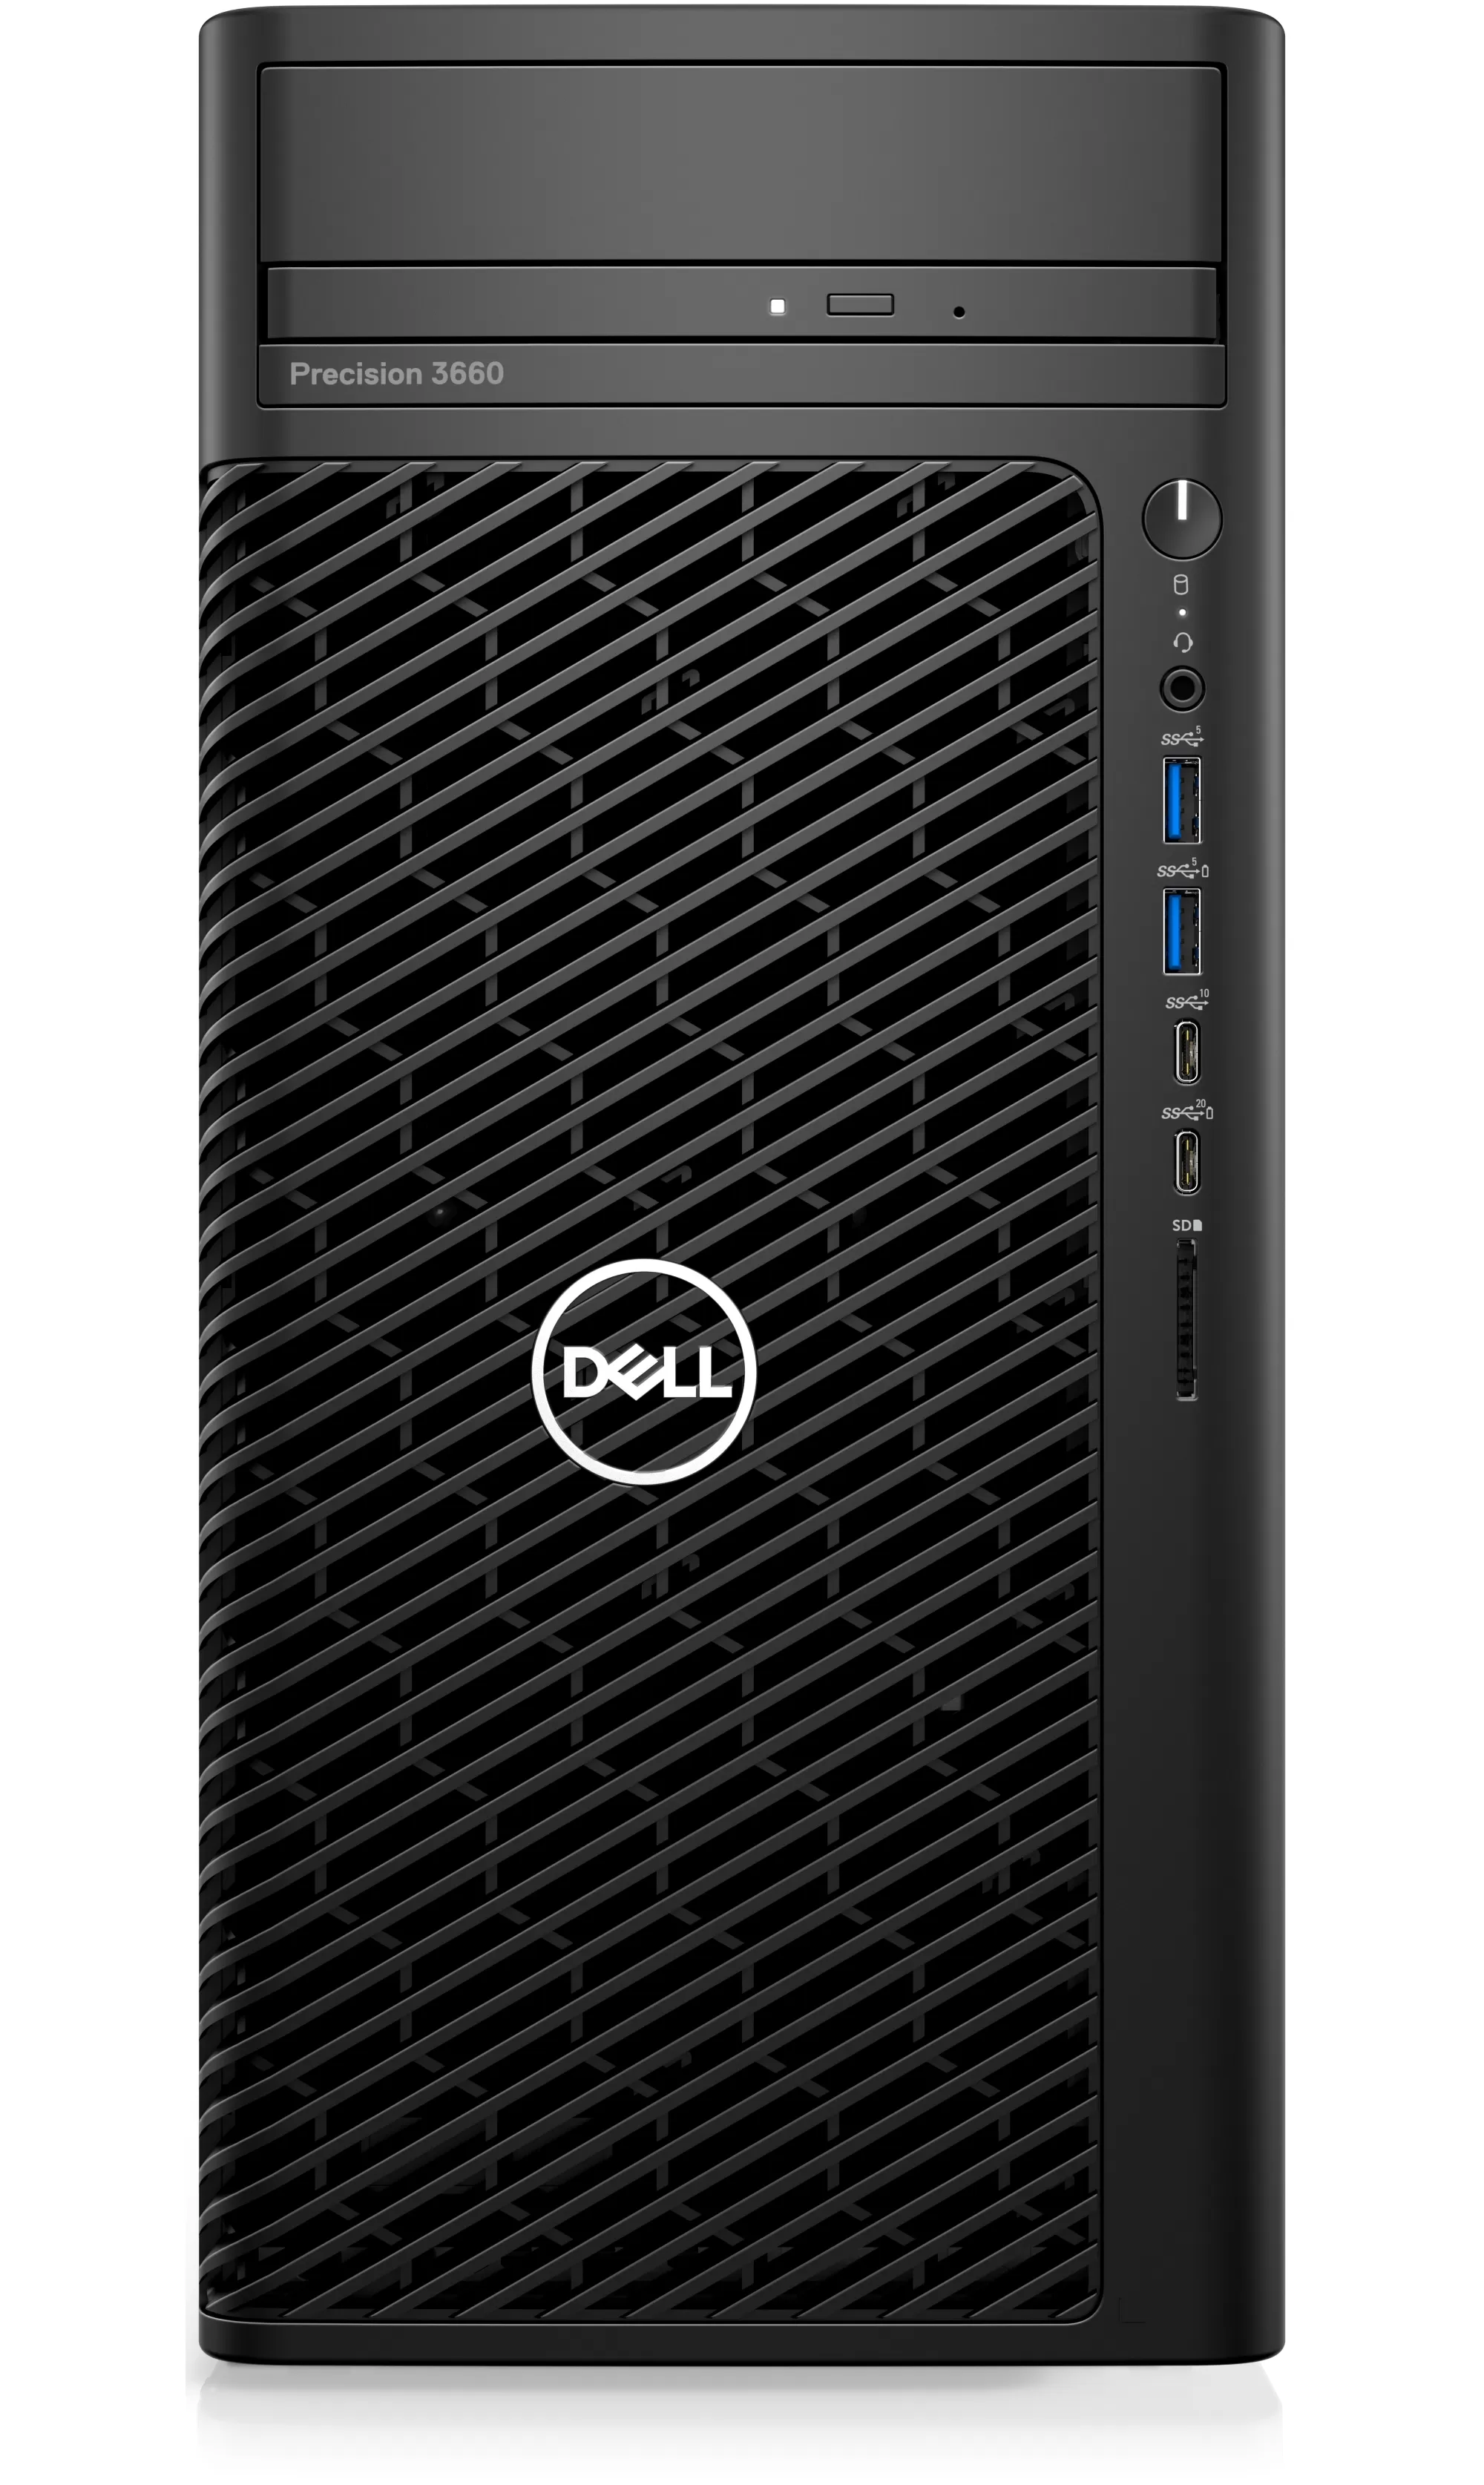 Sistem brand Dell precision 3660 intel core i7-13700k t1000-8gb ram 16gb hdd 2tb + ssd 1tb windows 10 pro prosupport